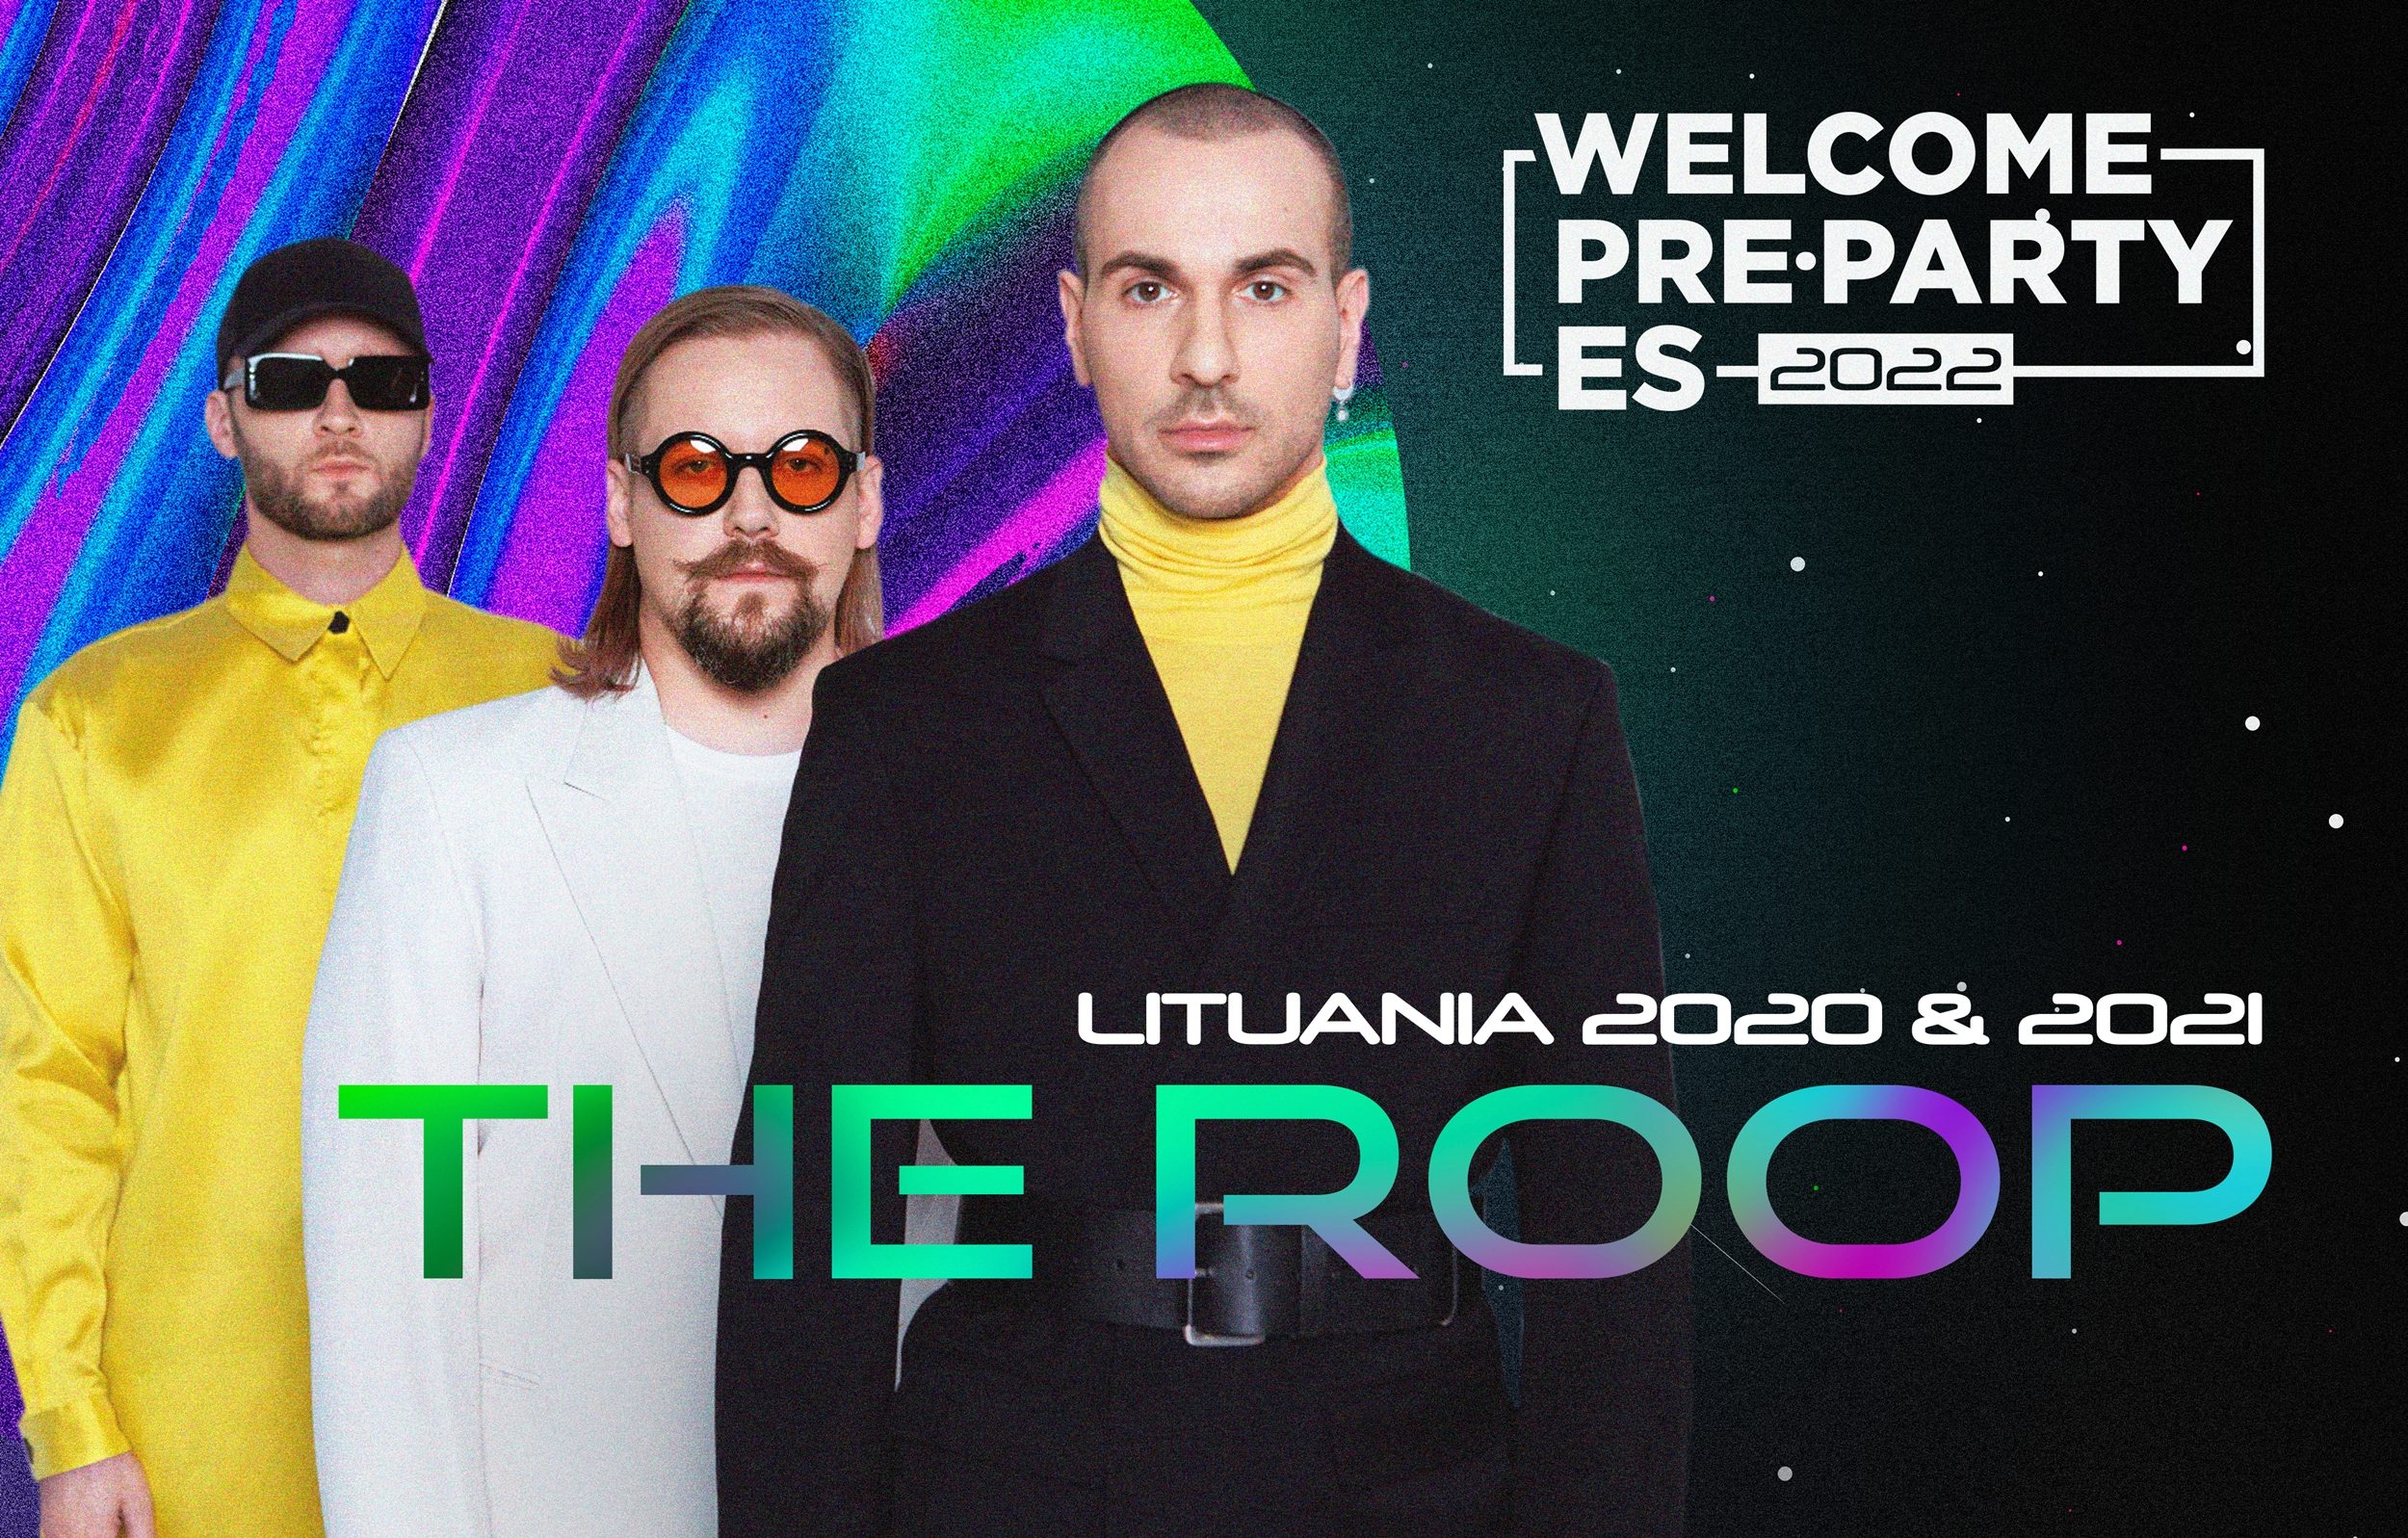 ¡Los lituanos The Roop actuarán en el Concierto de Bienvenida de la PrePartyES 2022!